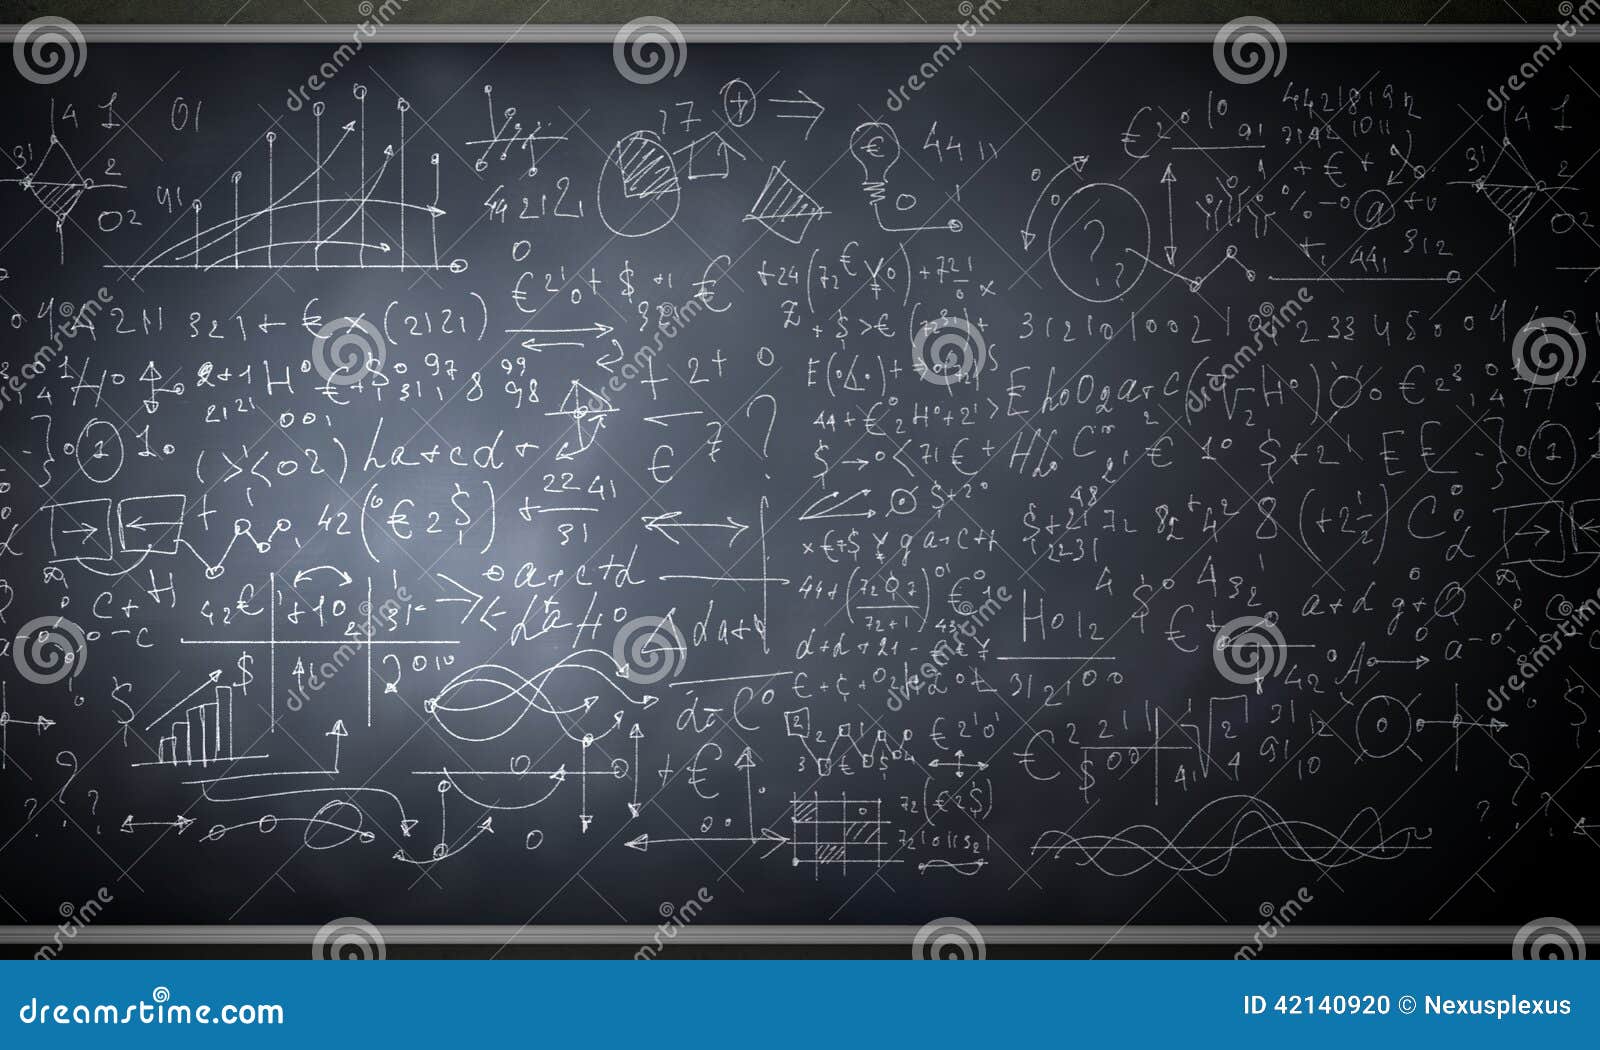 Fórmulas e figuras. Imagem de fundo do quadro-negro com desenhos da ciência